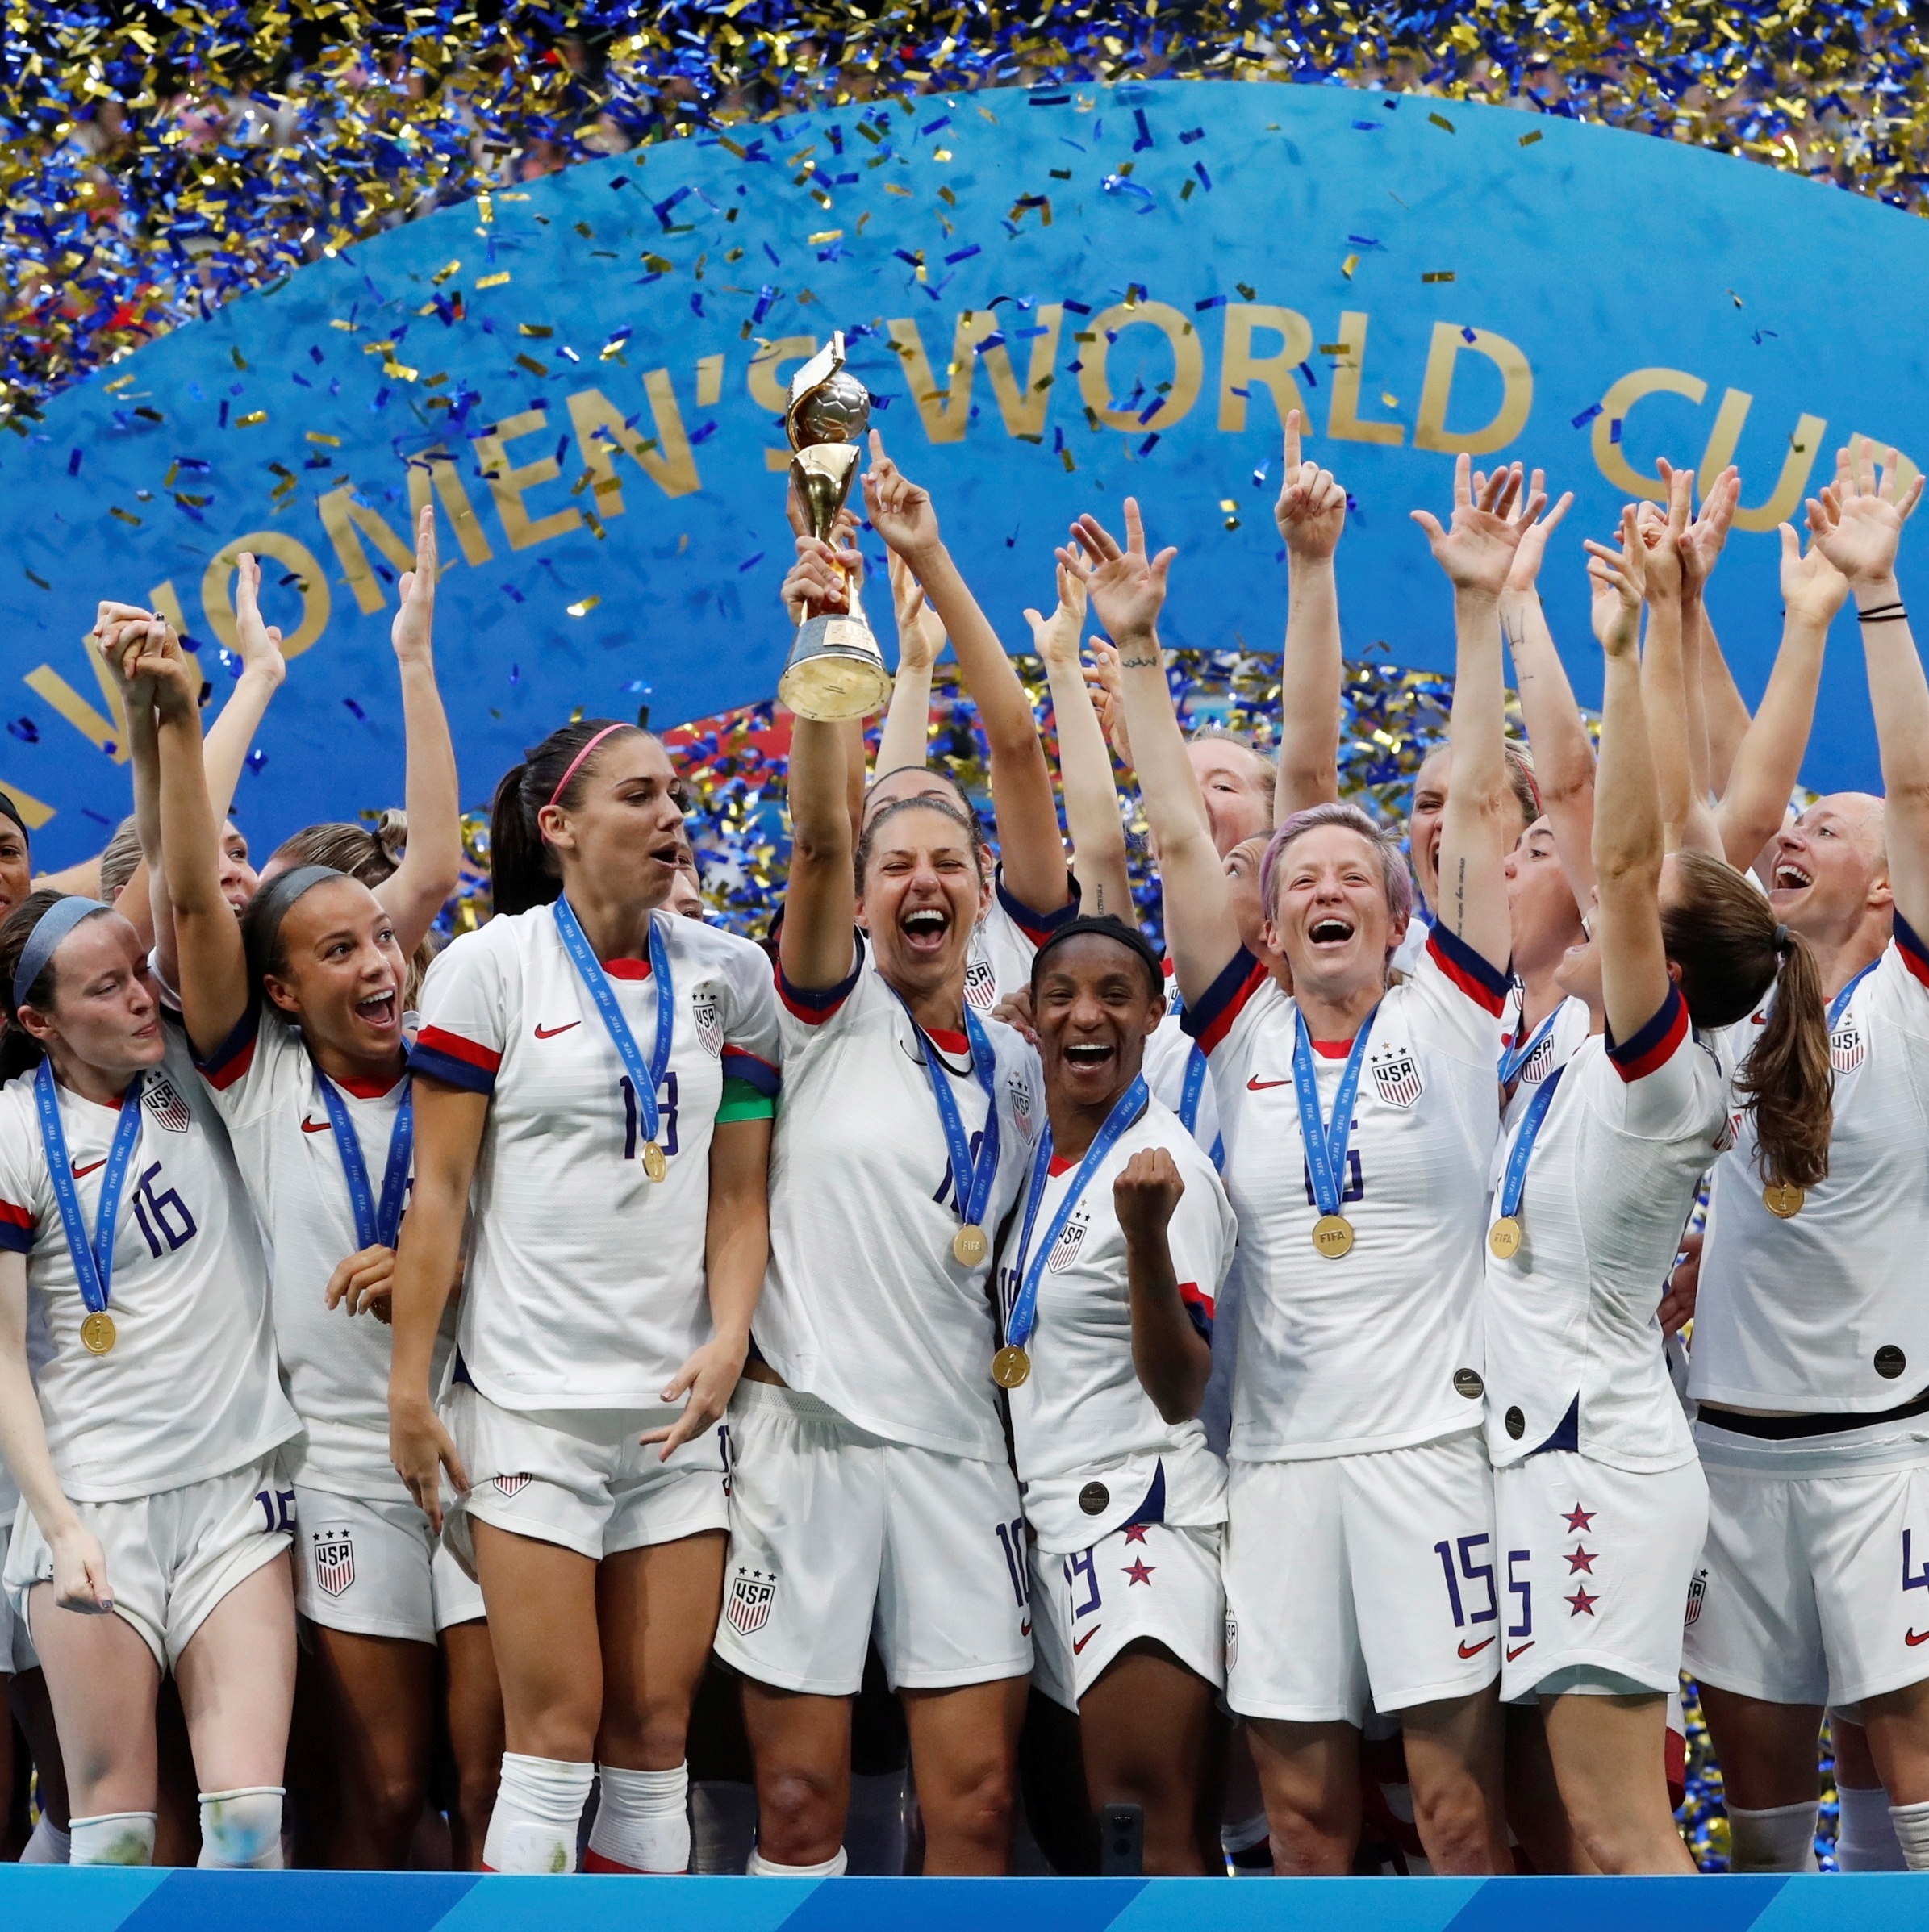 Copa do Mundo feminina: Fifa tem três propostas para sede do